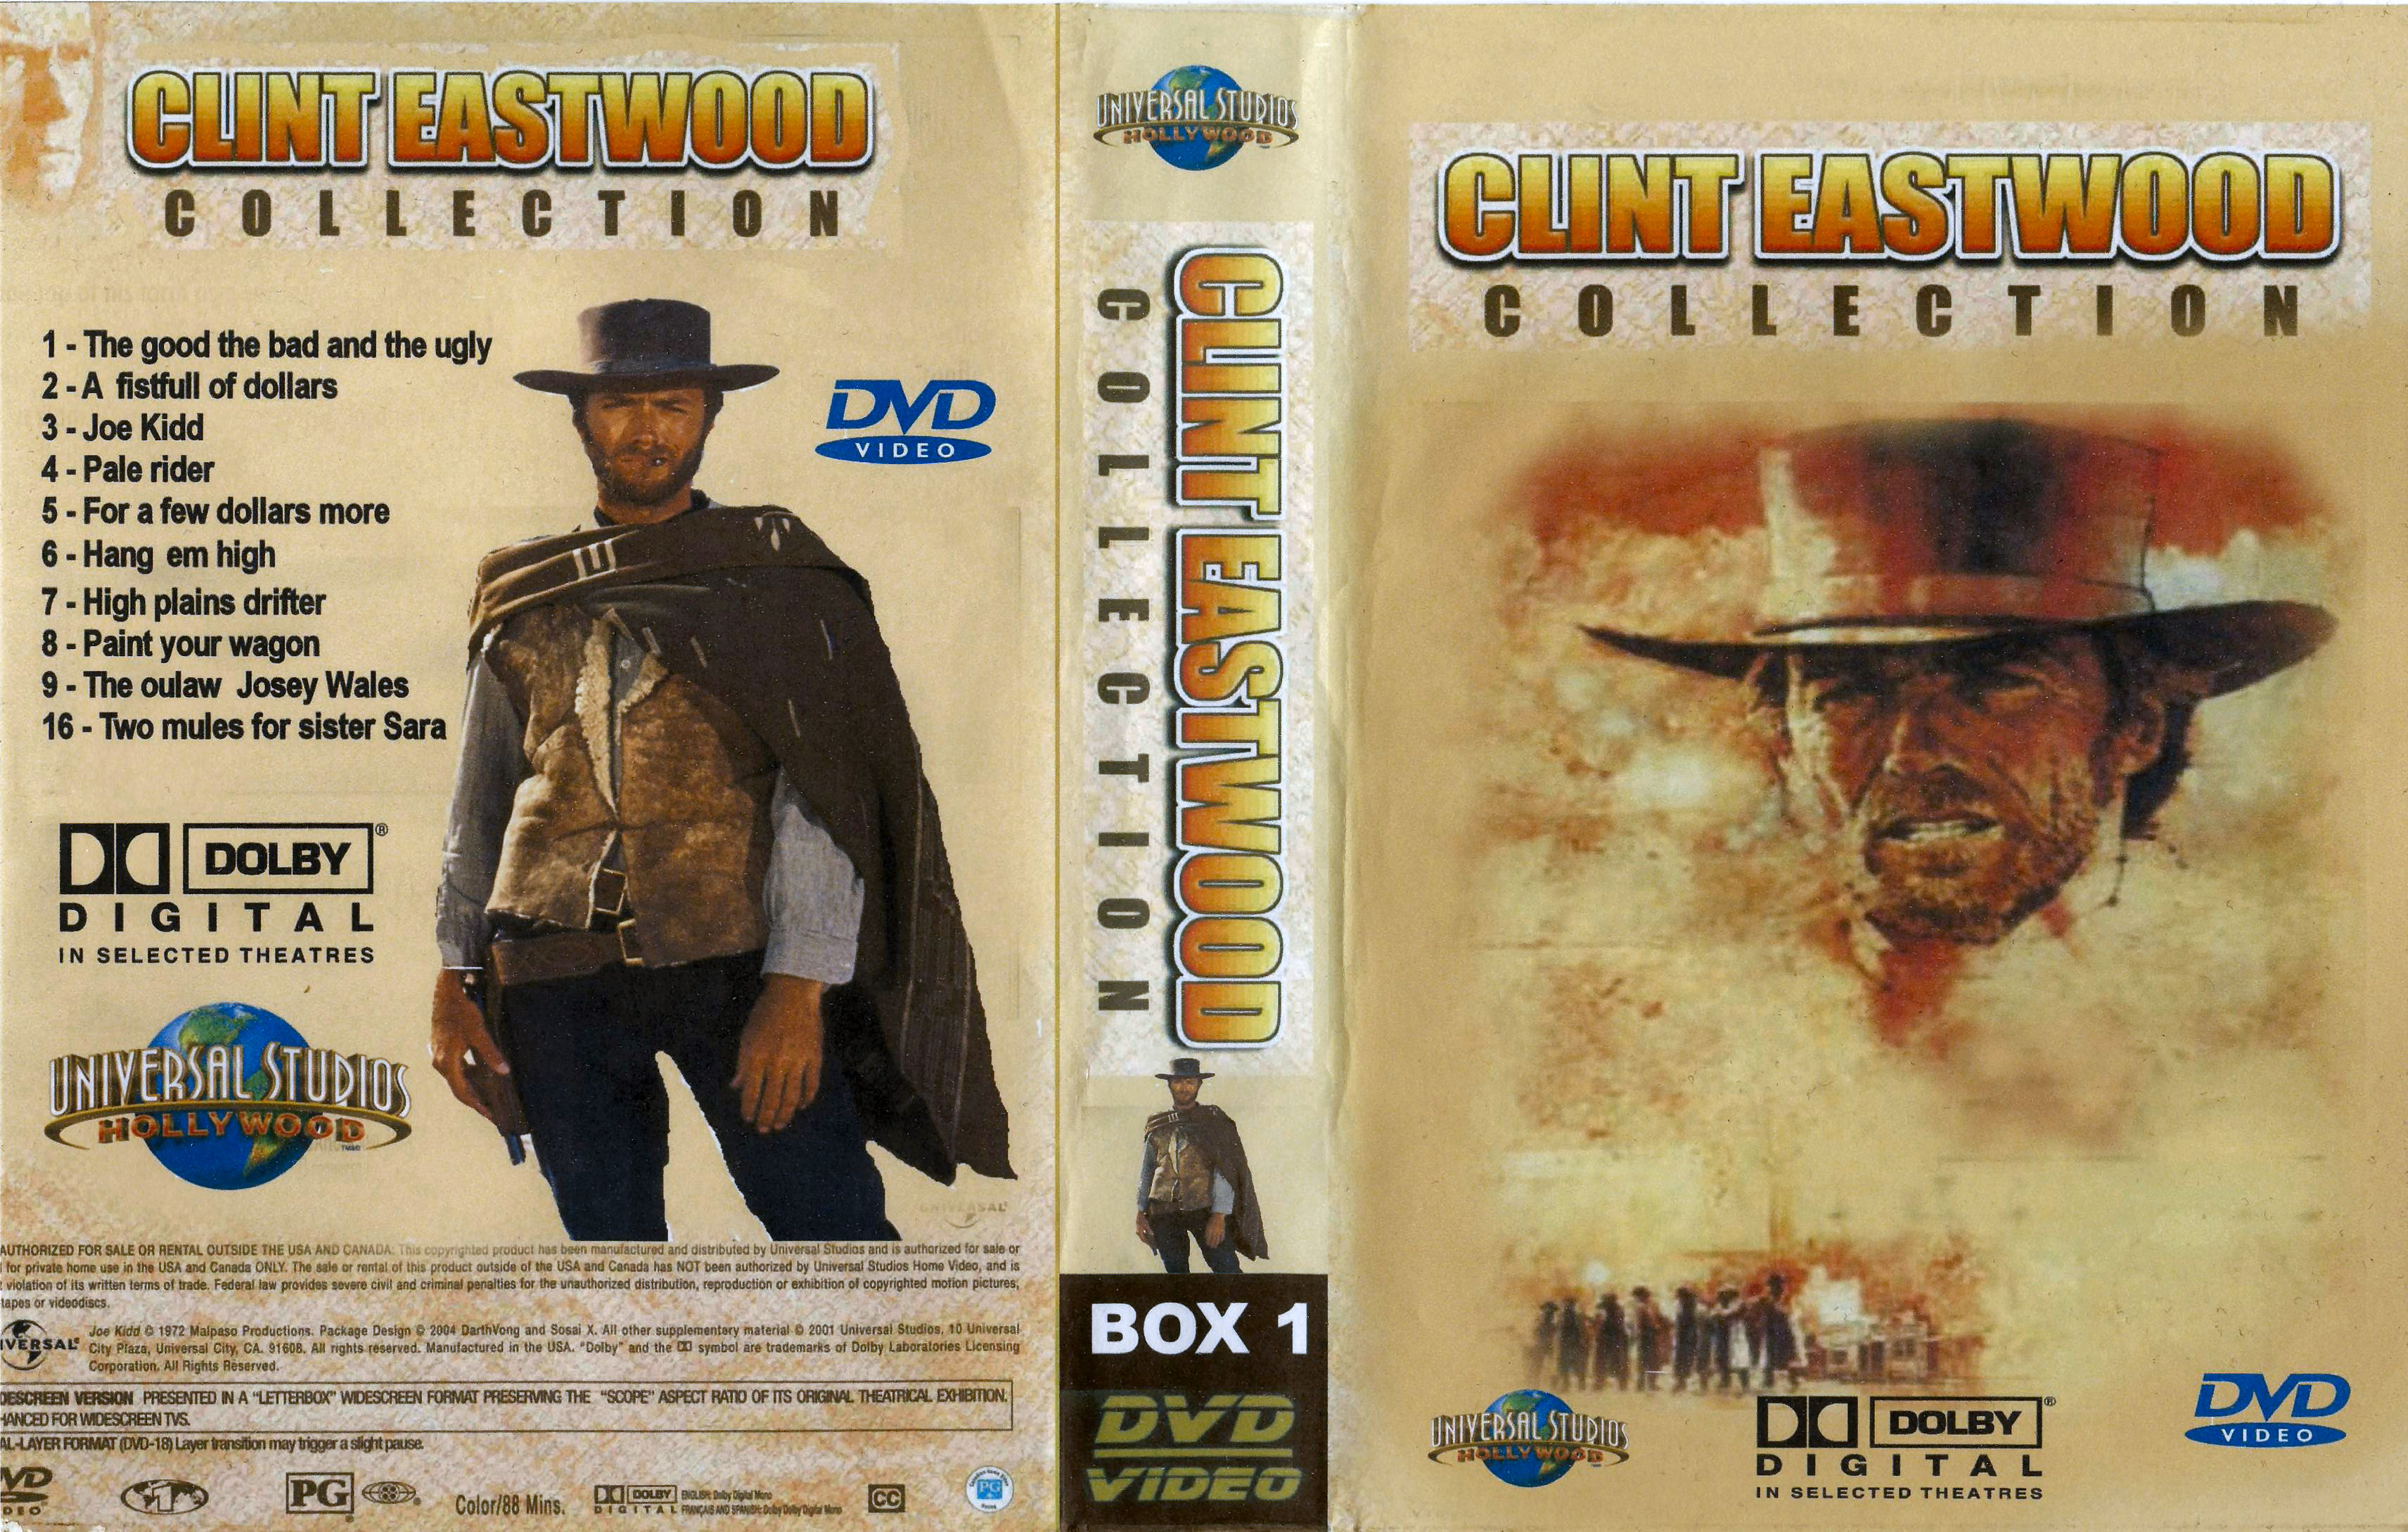 Clint Eastwood Collectie Box 1 DvD 3 van 10